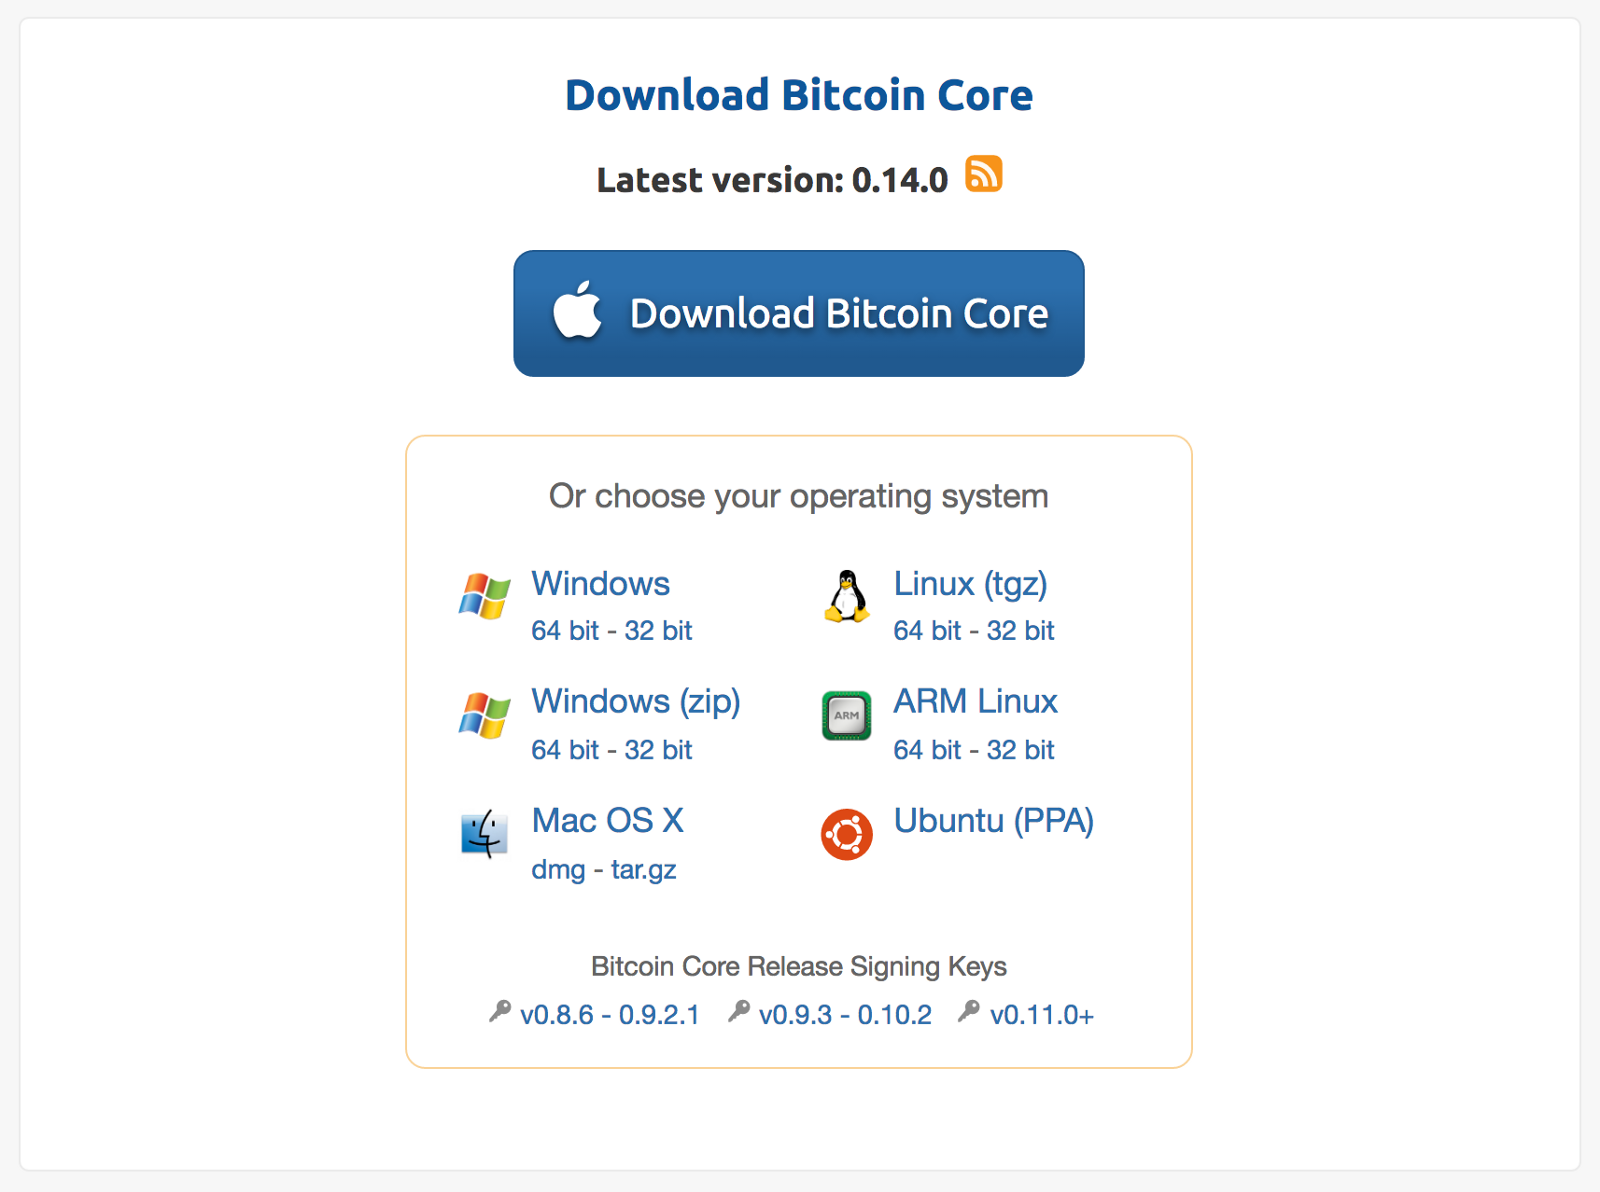 Bitcoin Core Version 0.14.0